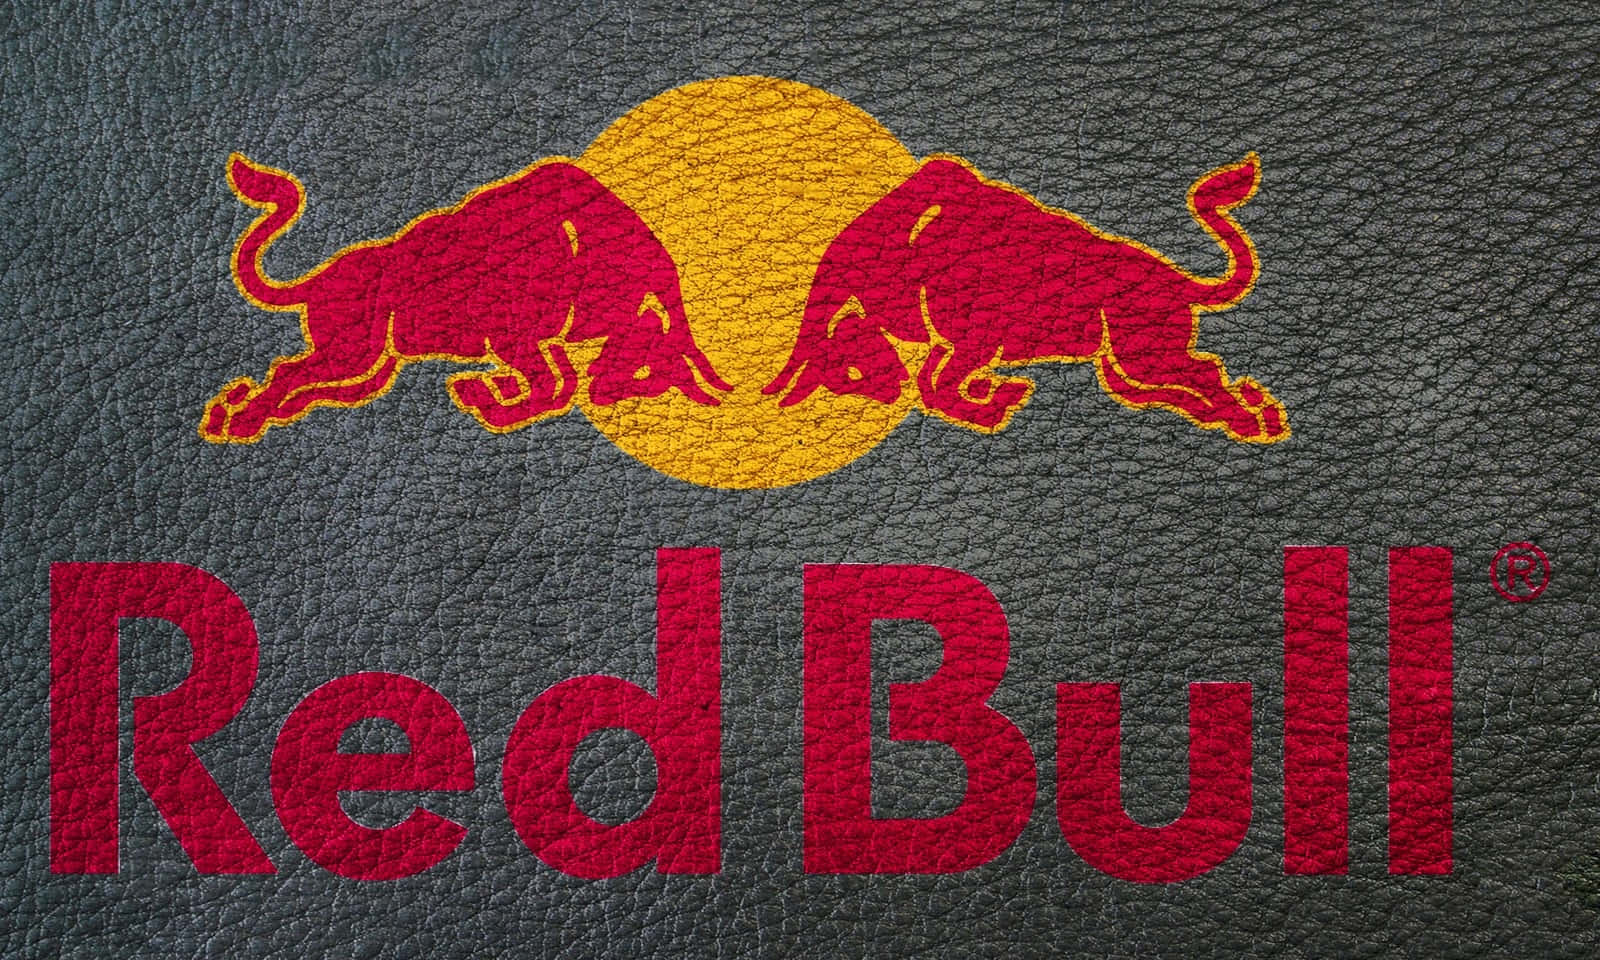 Billedeaf Red Bull Energy Drink Dåse.